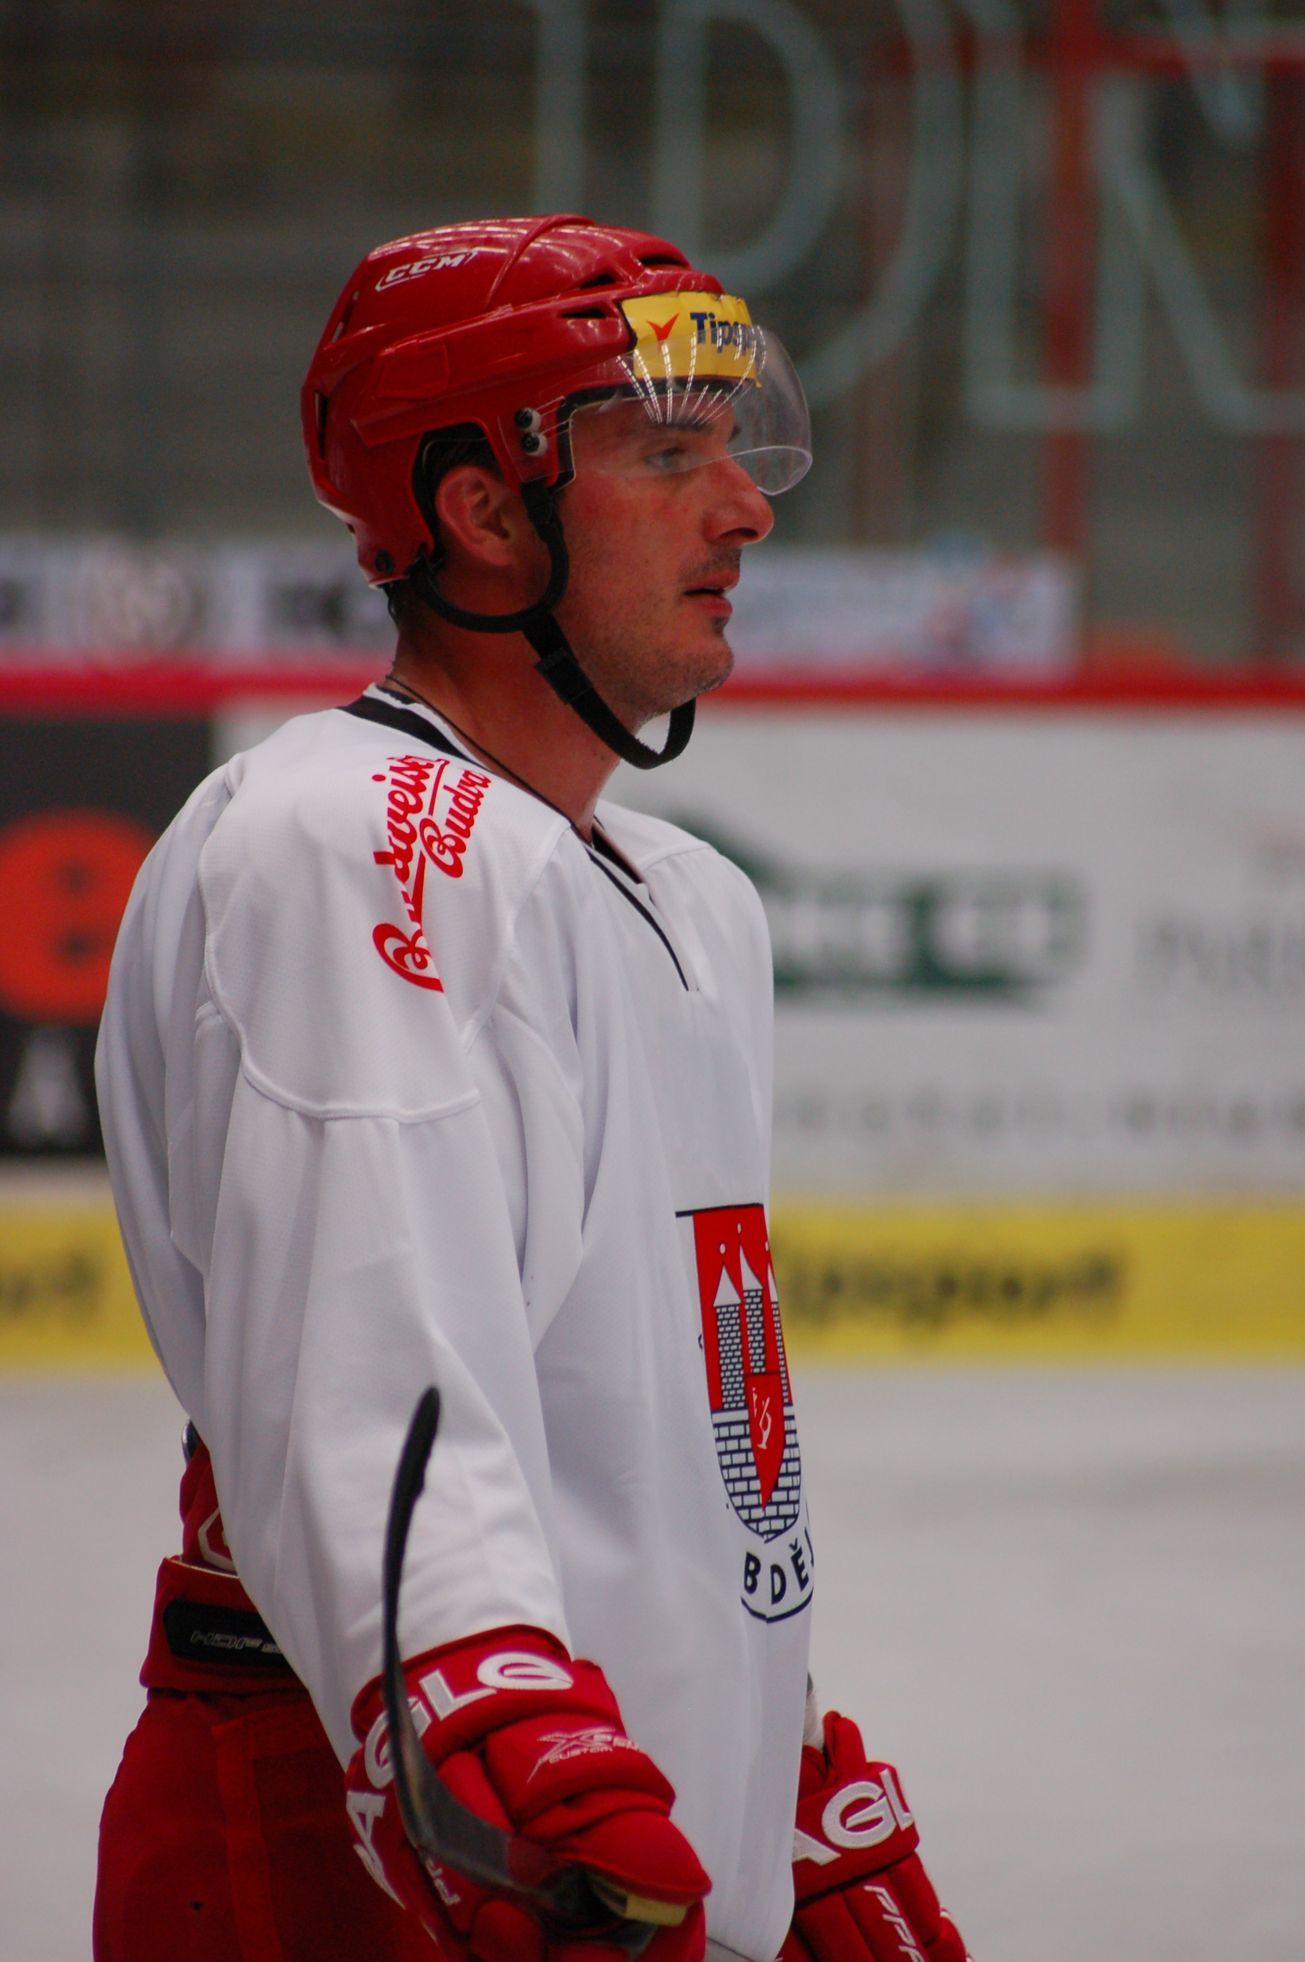 První trénink CB Hokej 2013: Aleš Kotalík